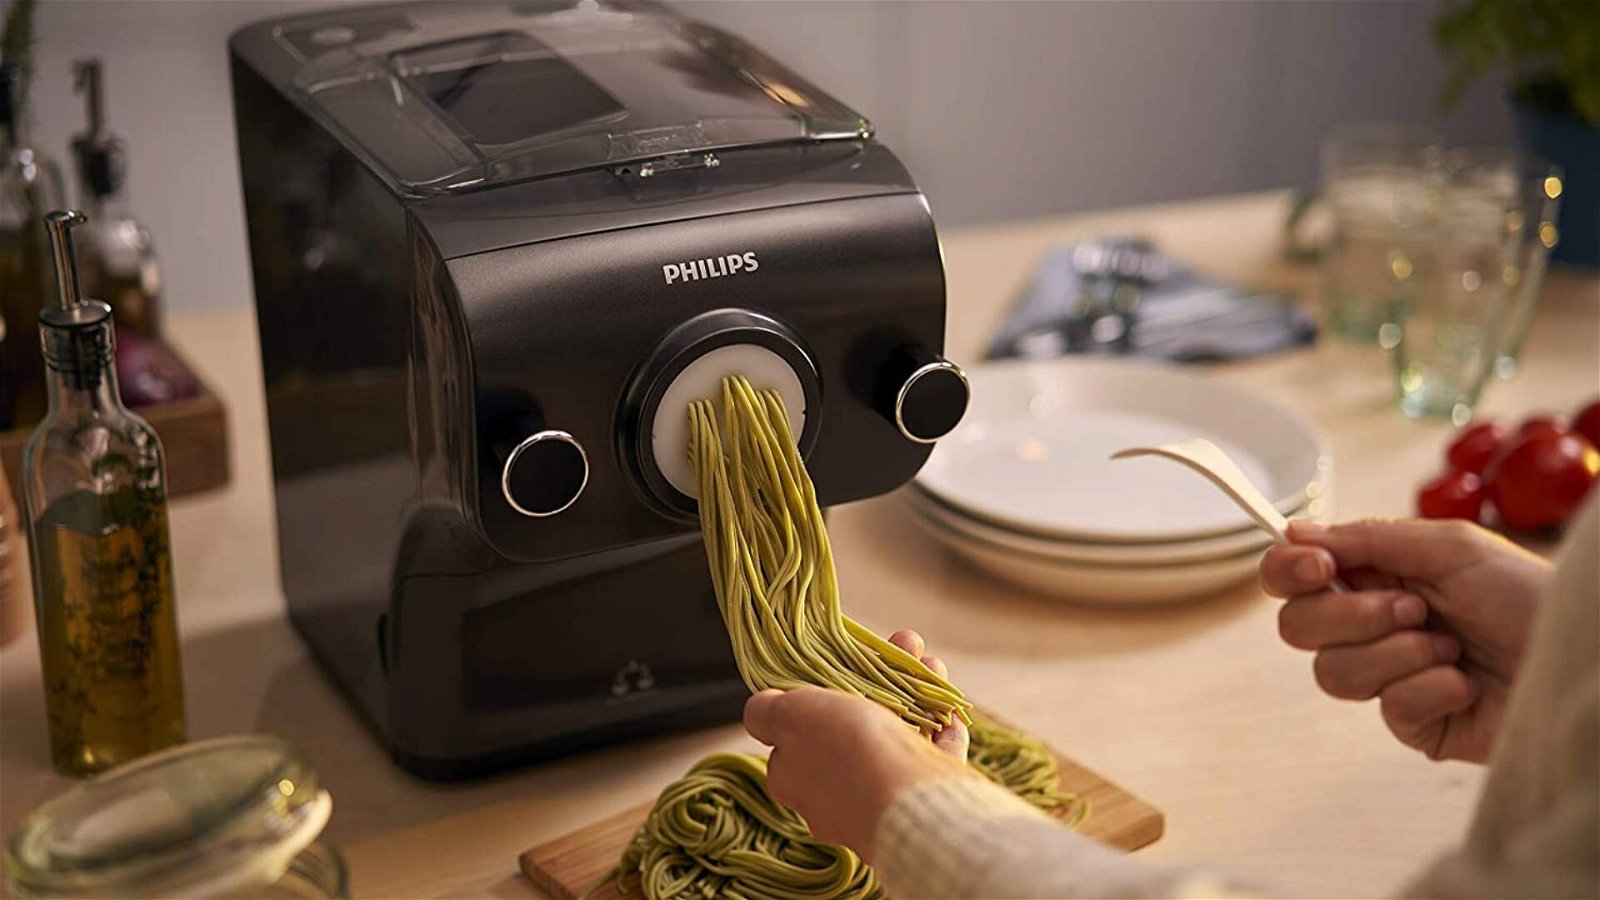 Immagine di Offerte del giorno Amazon: nuove offerte sui prodotti Philips per la casa e la cucina!